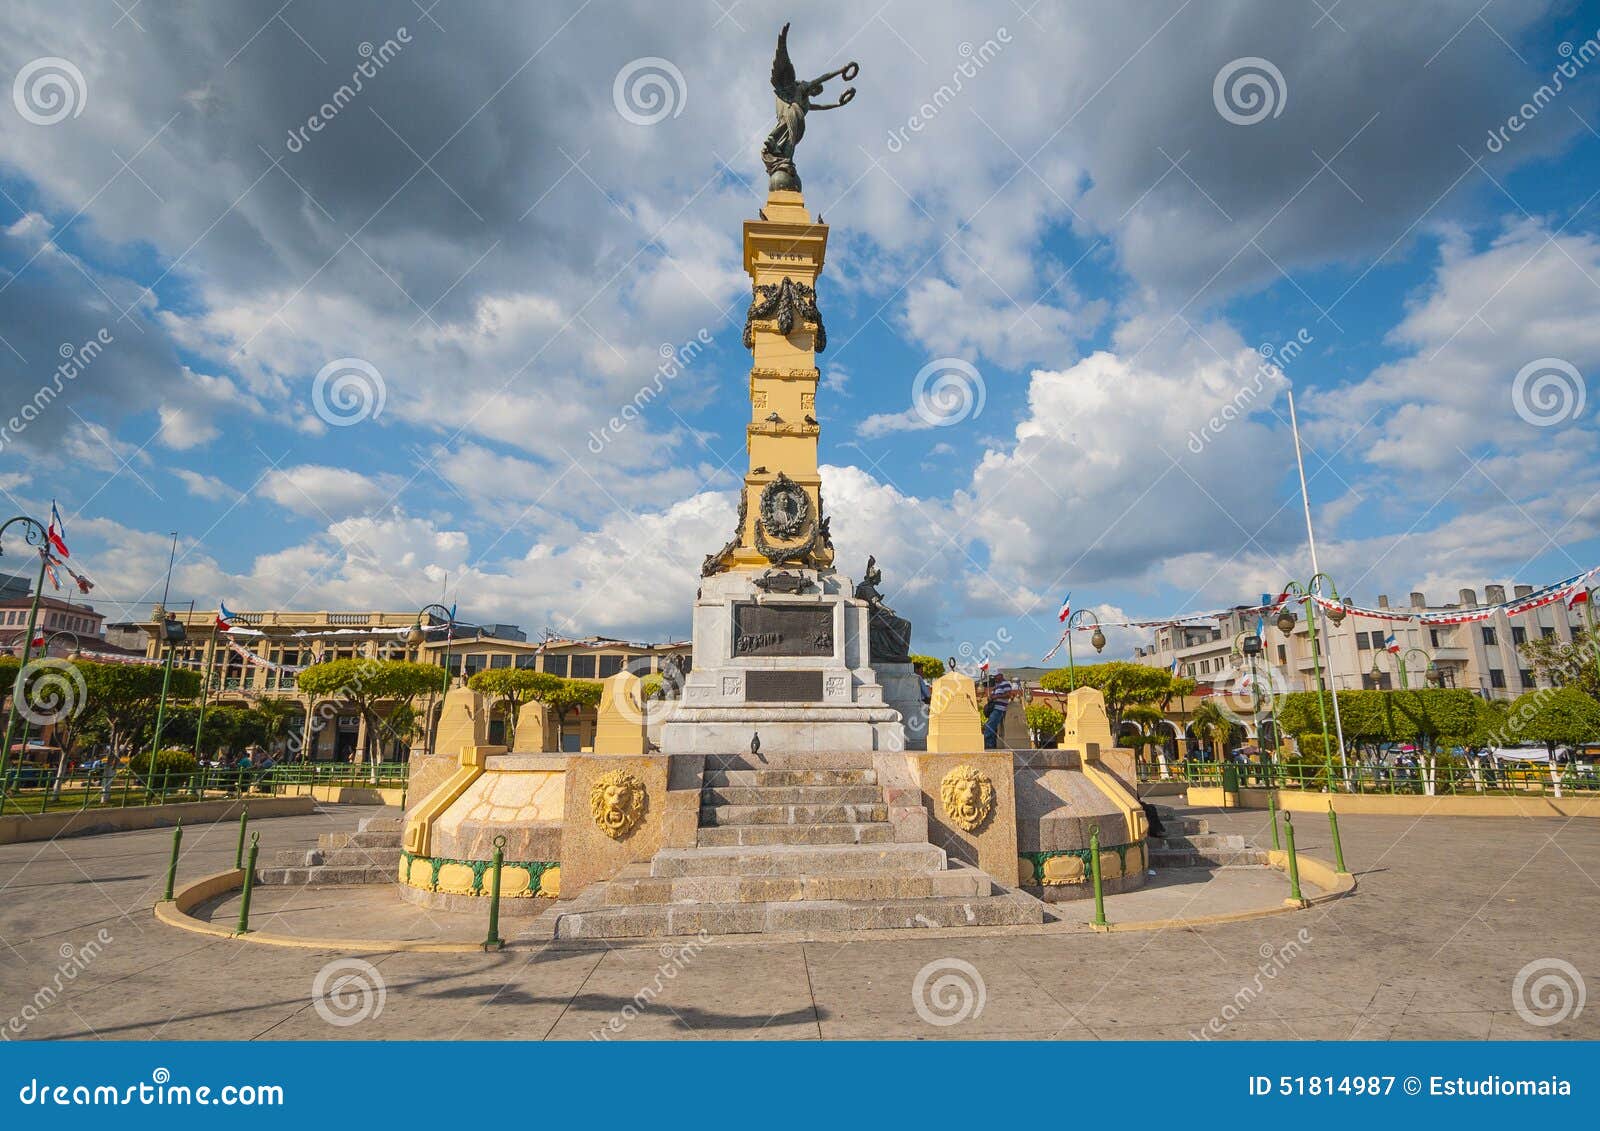 plaza libertad monument in el salvador